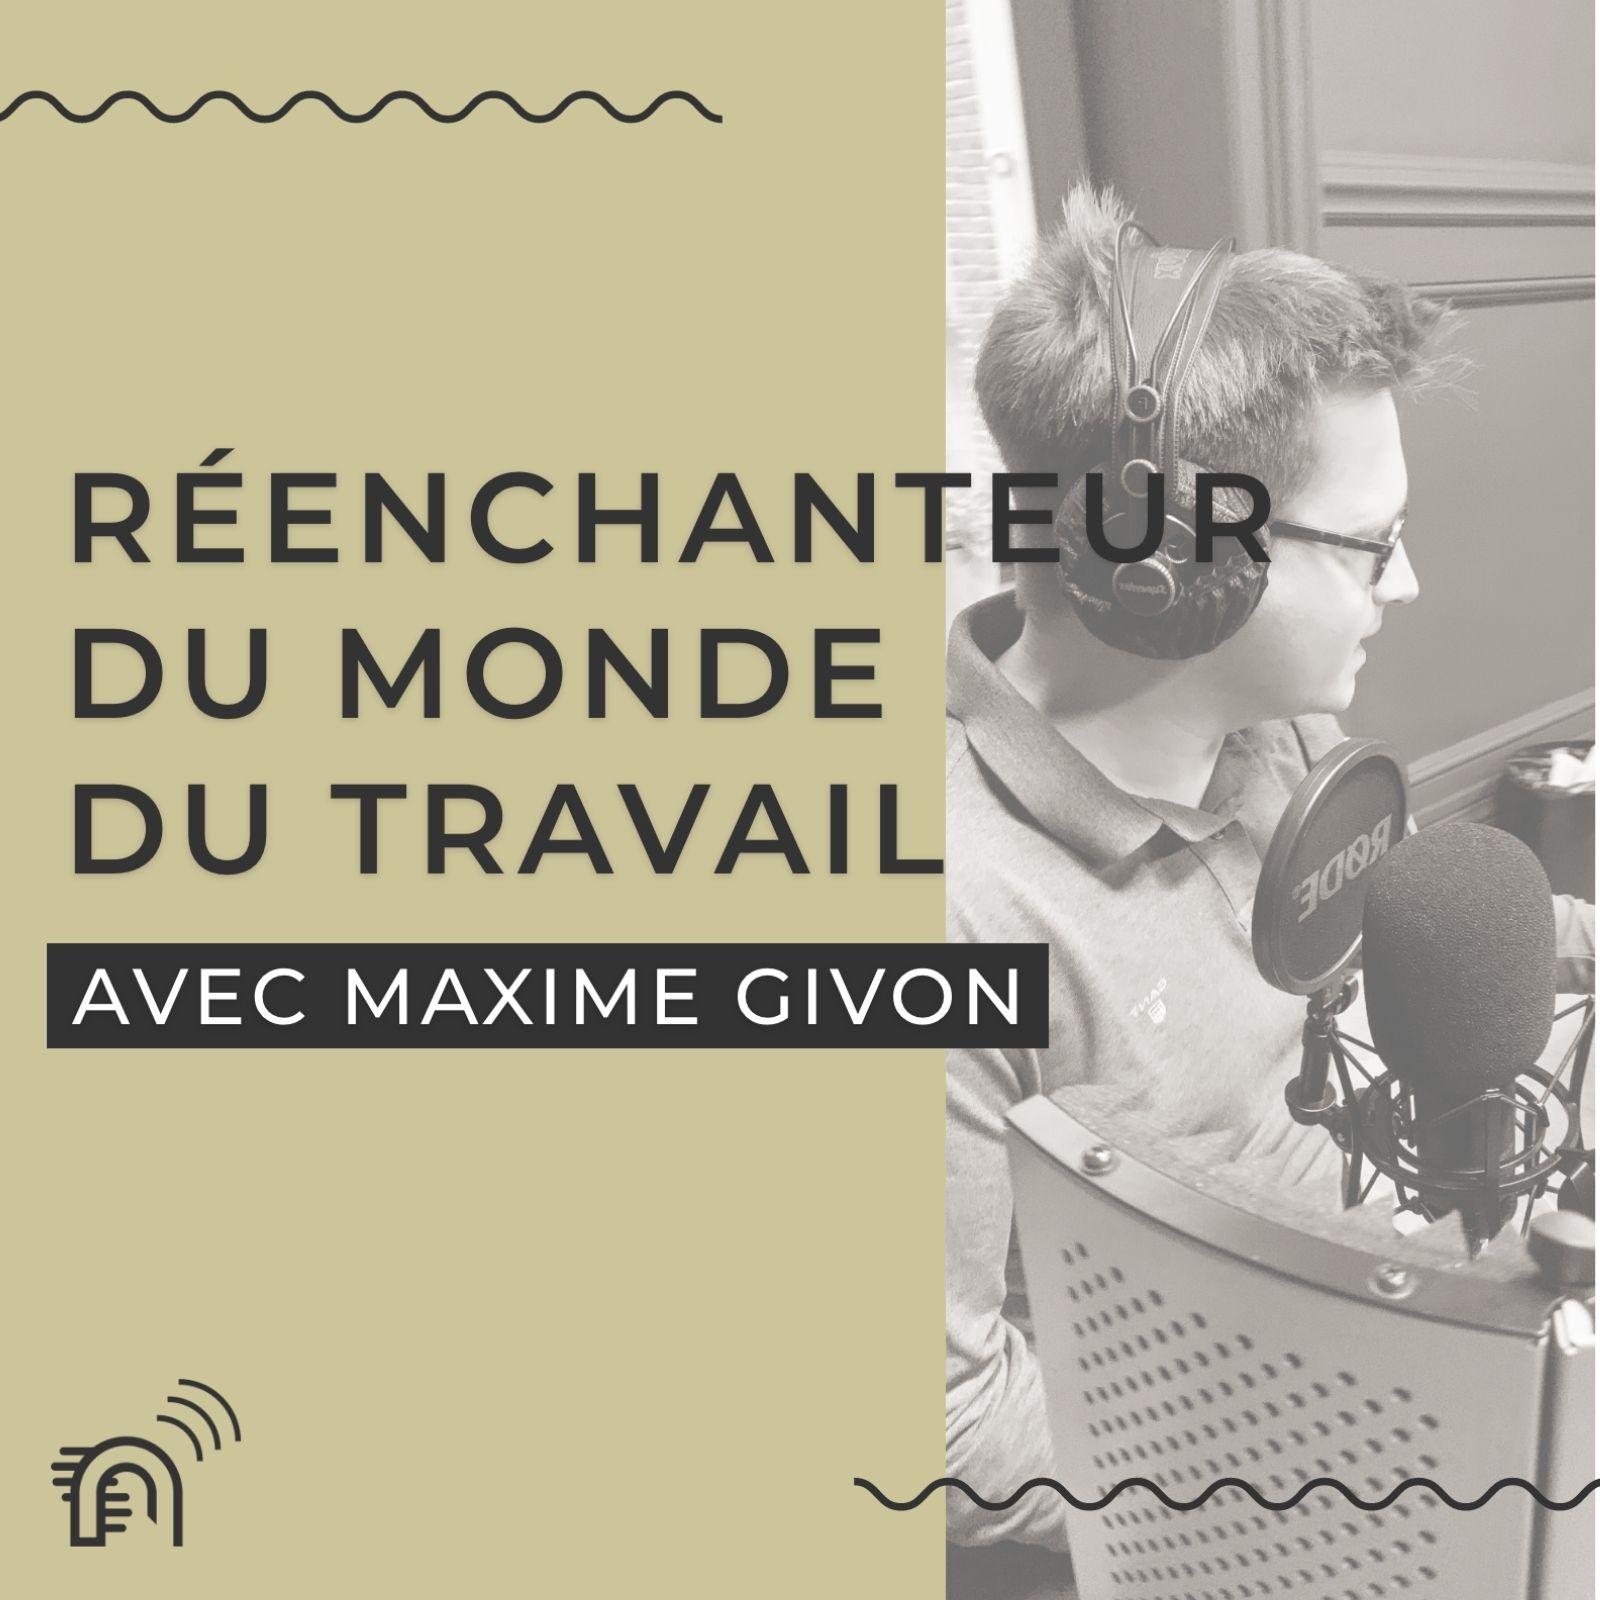 Podcast : J'ai rendez vous avec Maxime Givon